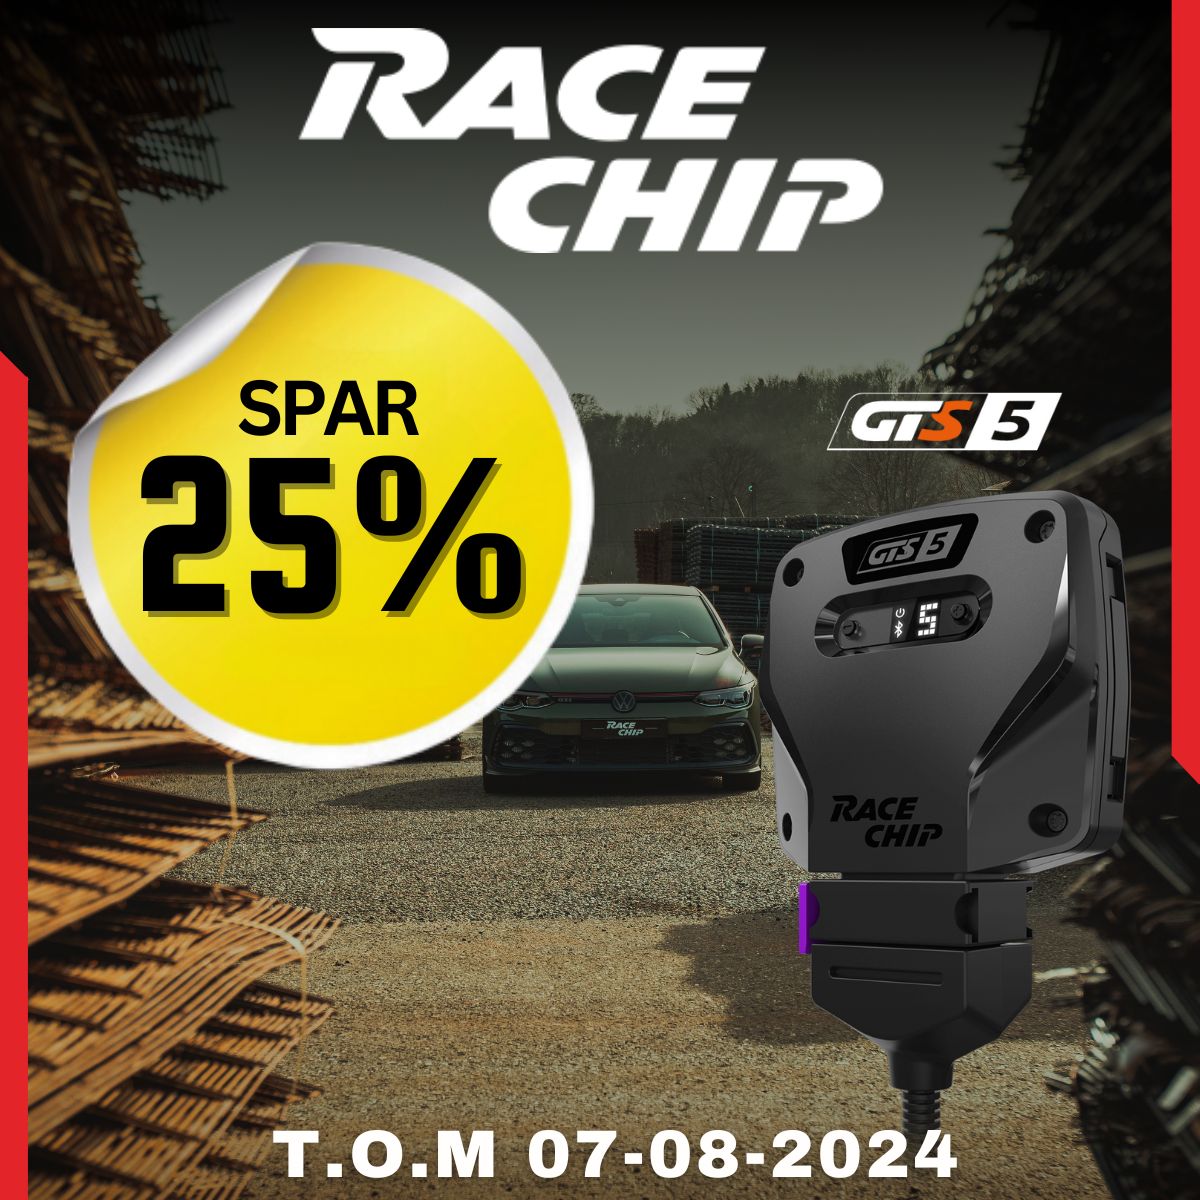 RaceChip har fødselsdag! SPAR 25% på RaceChip GTS5 og GTS5 Black!